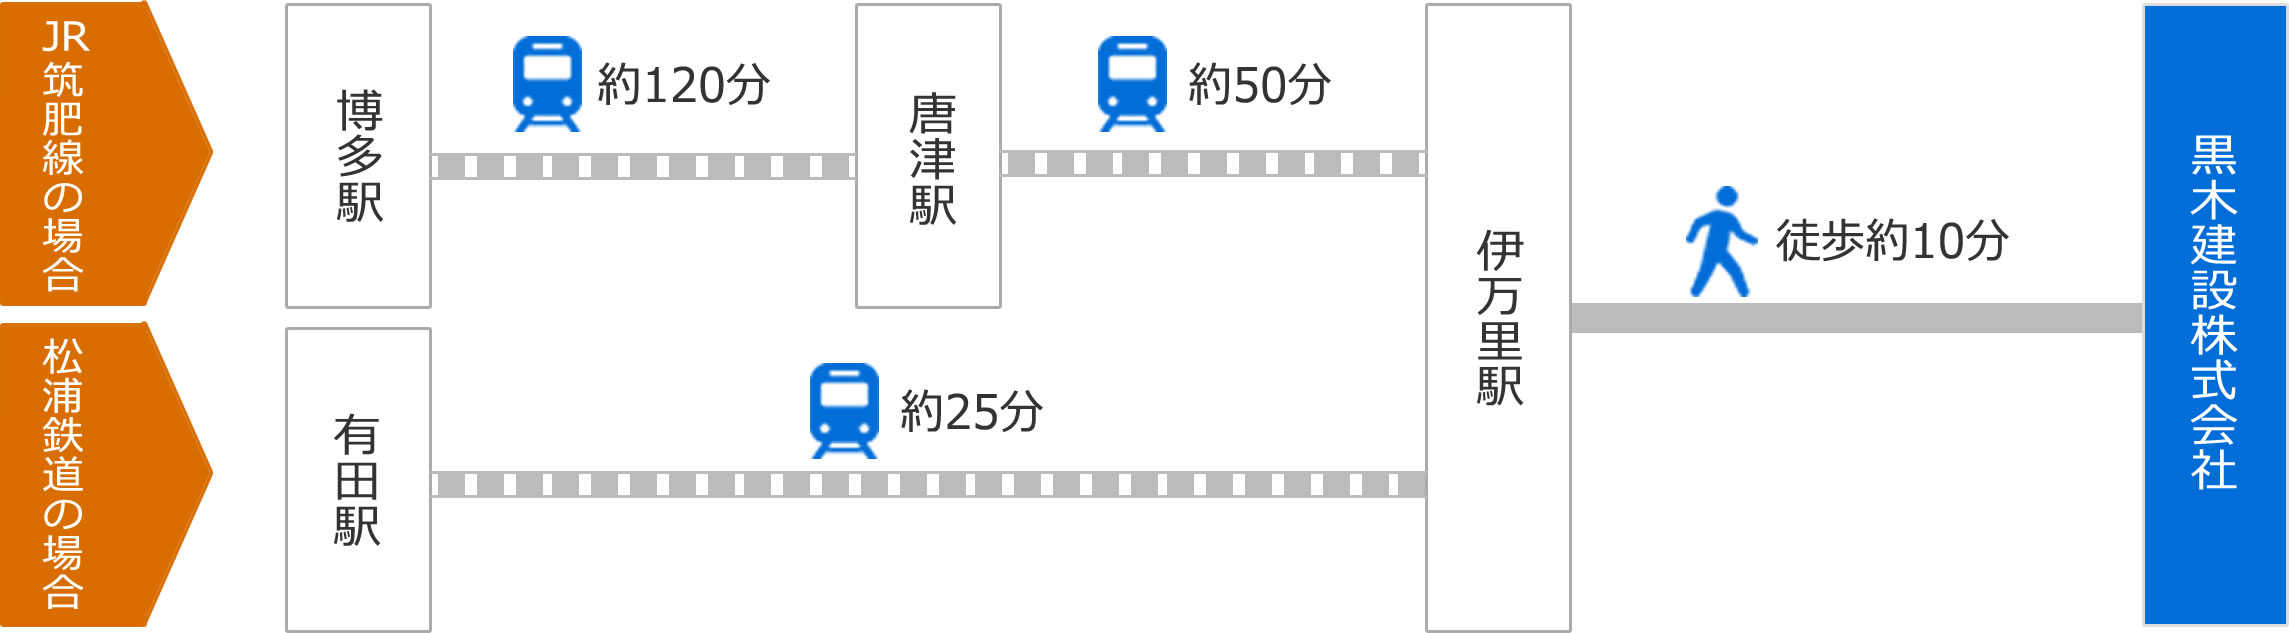 JR筑肥線の場合は博多駅から唐津駅まで約120分、唐津駅から伊万里駅まで約50分、伊万里駅から徒歩約10分。松浦鉄道の場合は有田駅から伊万里駅まで約25分、伊万里駅から徒歩約10分。